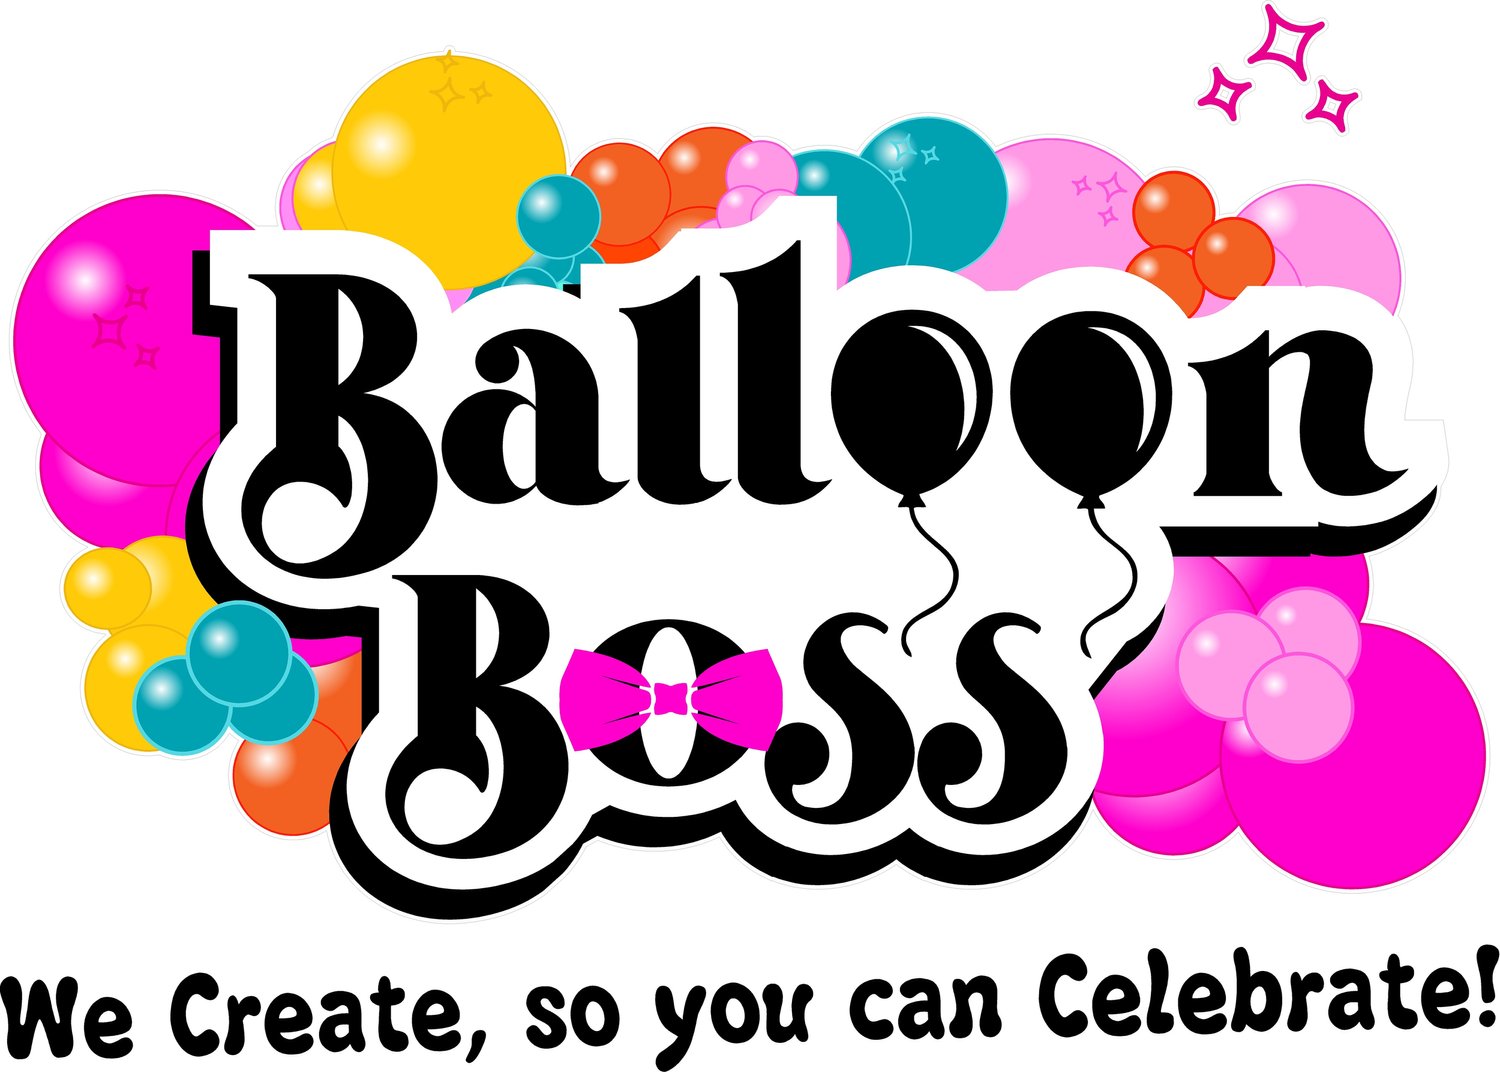 www.balloonbossyxe.com